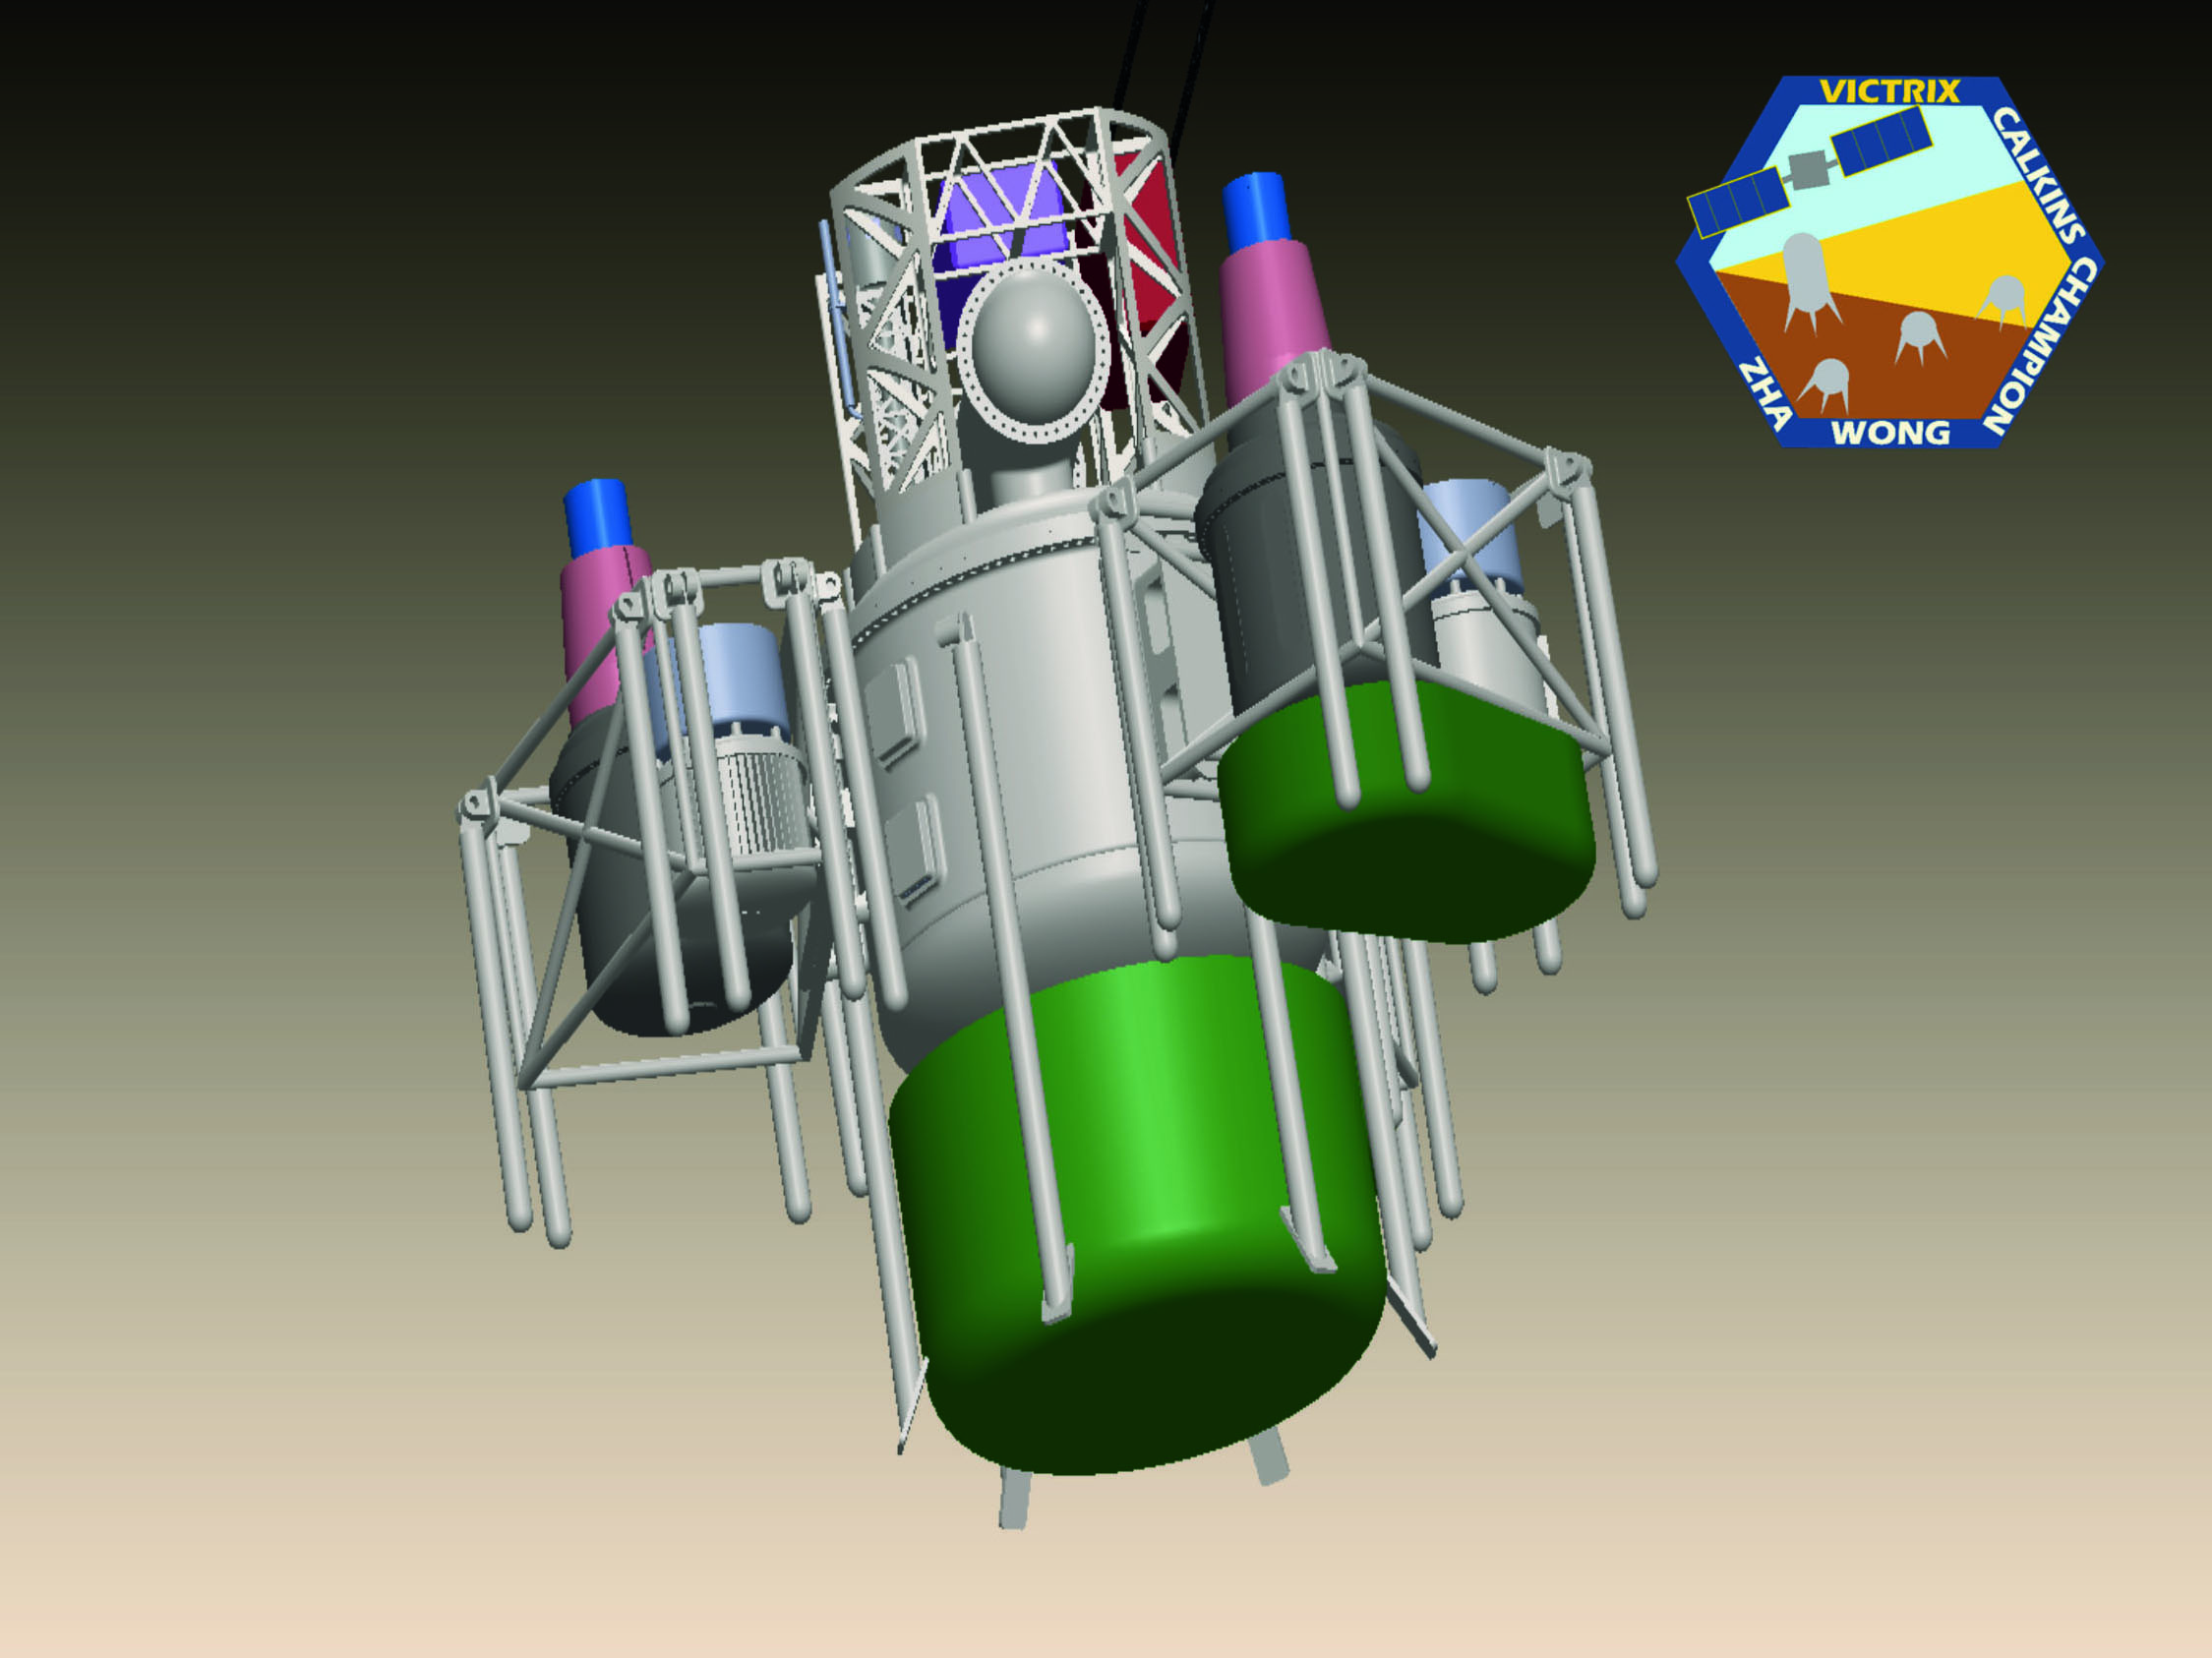 victrix venus lander student design